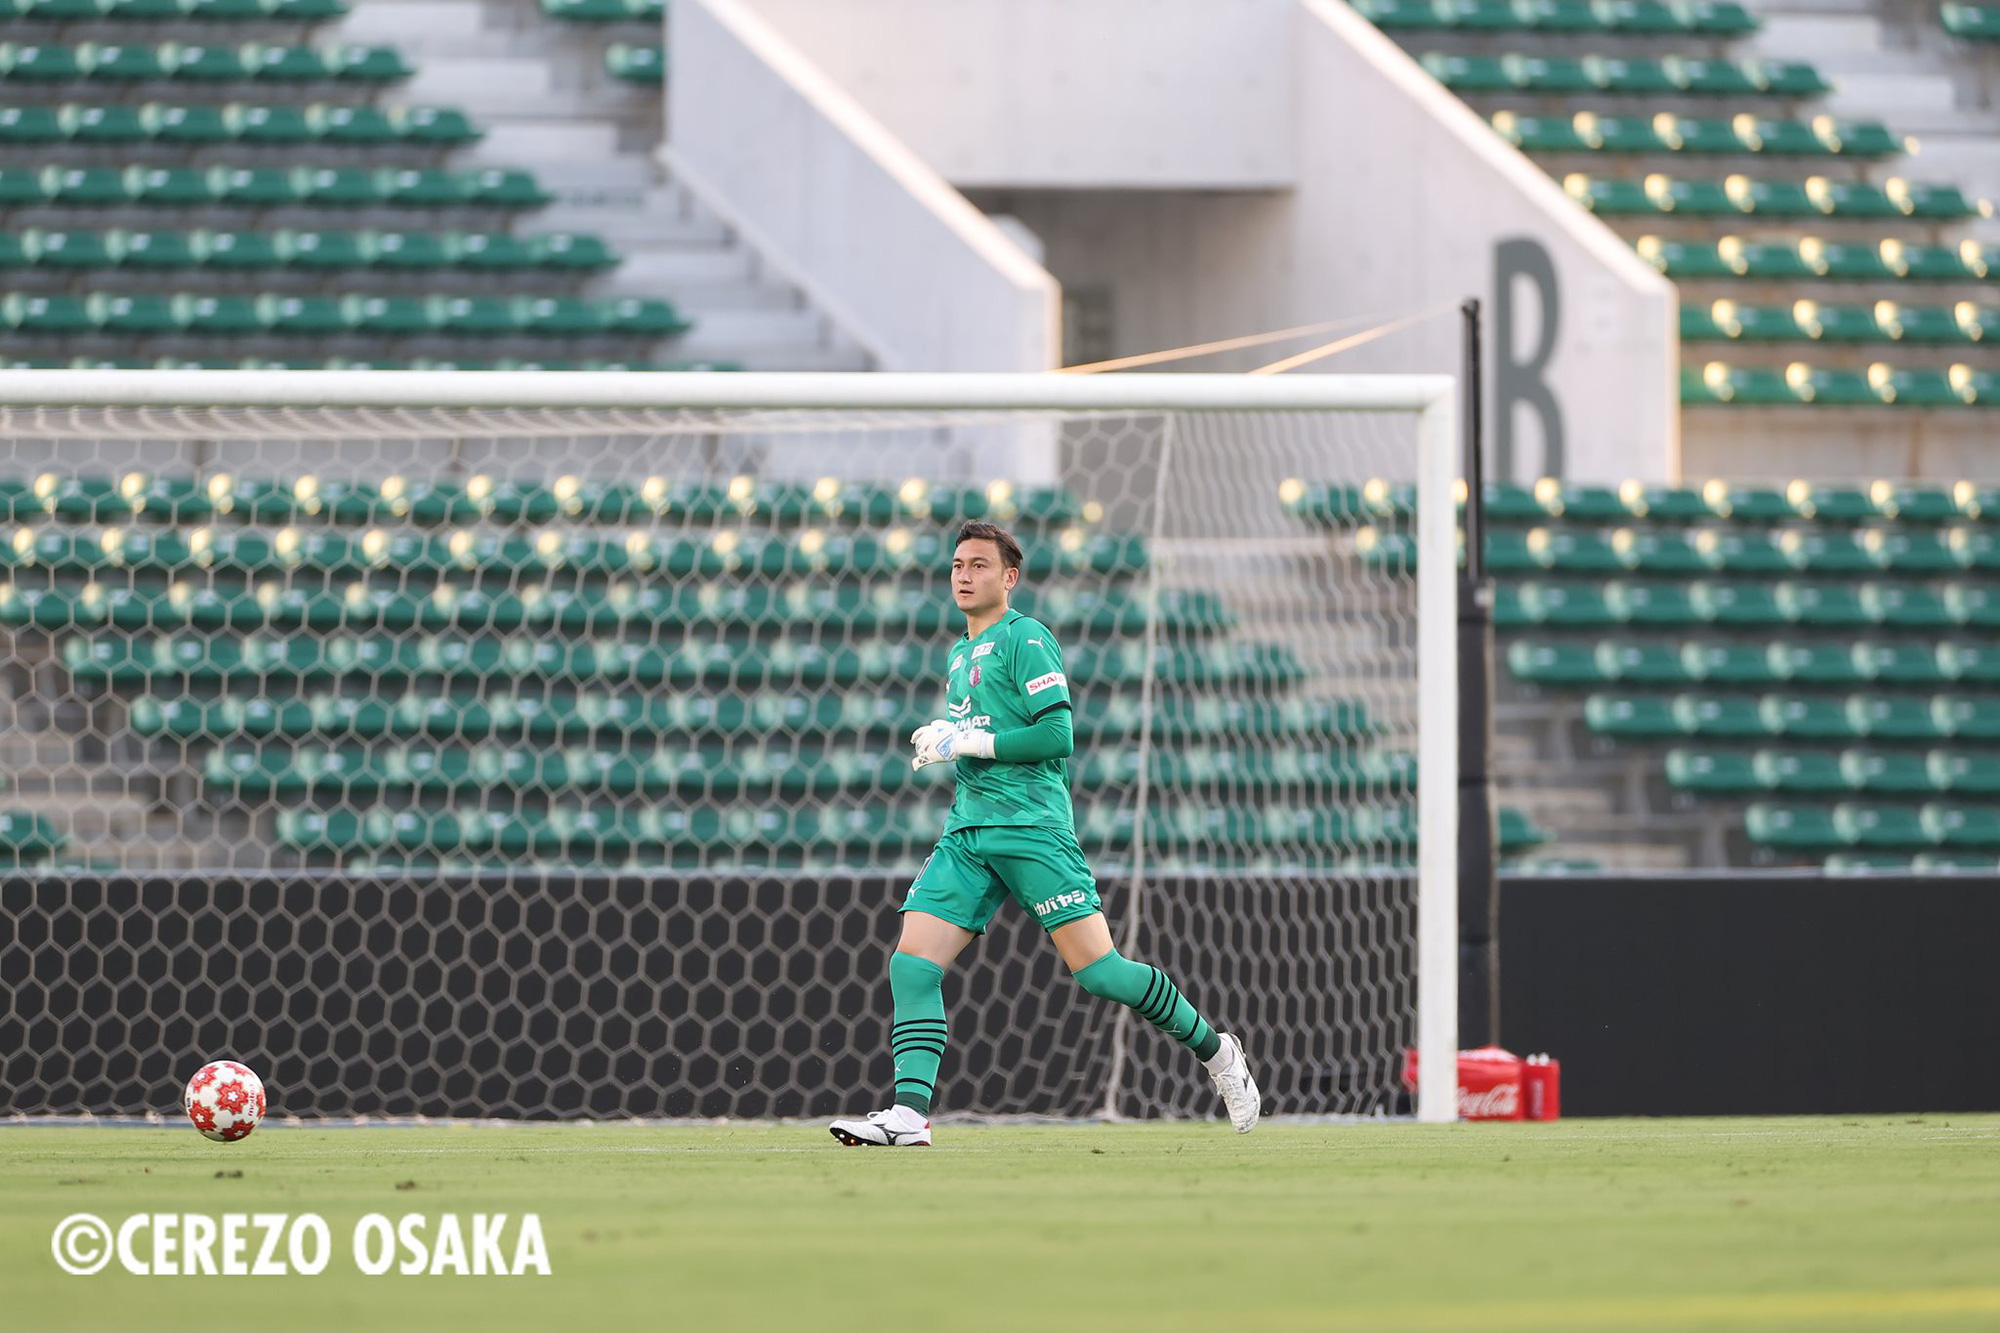 HLV Cerezo Osaka chỉ ra điểm yếu Đặng Văn Lâm cần sớm cải thiện - Ảnh 2.